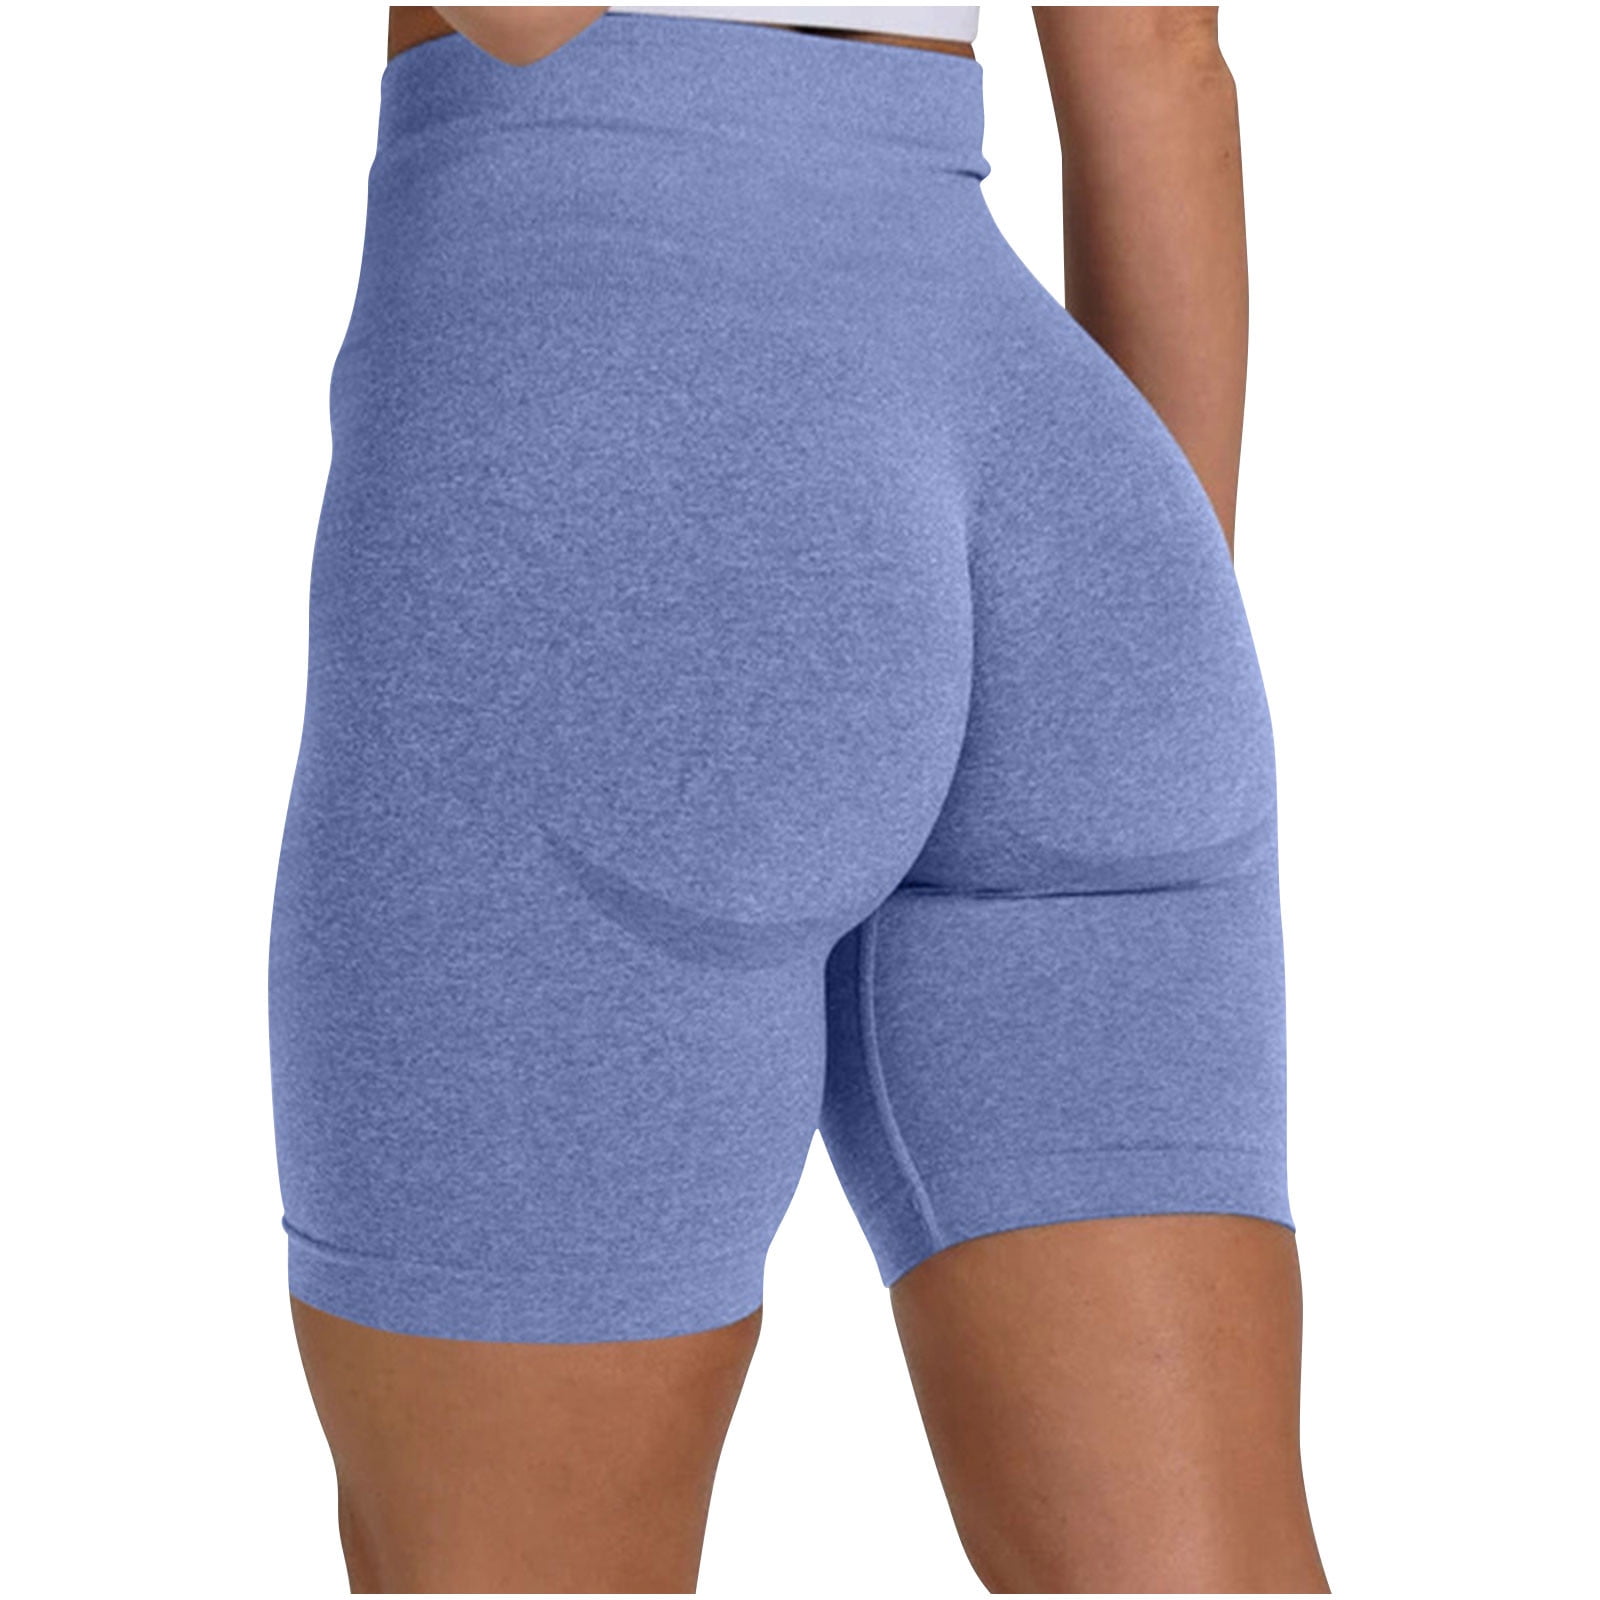 Womens Workout Shorts Scrunch Butt Lifting High Waisted Seamless Gym Yoga  Running Biker Booty Shorts - AliExpress